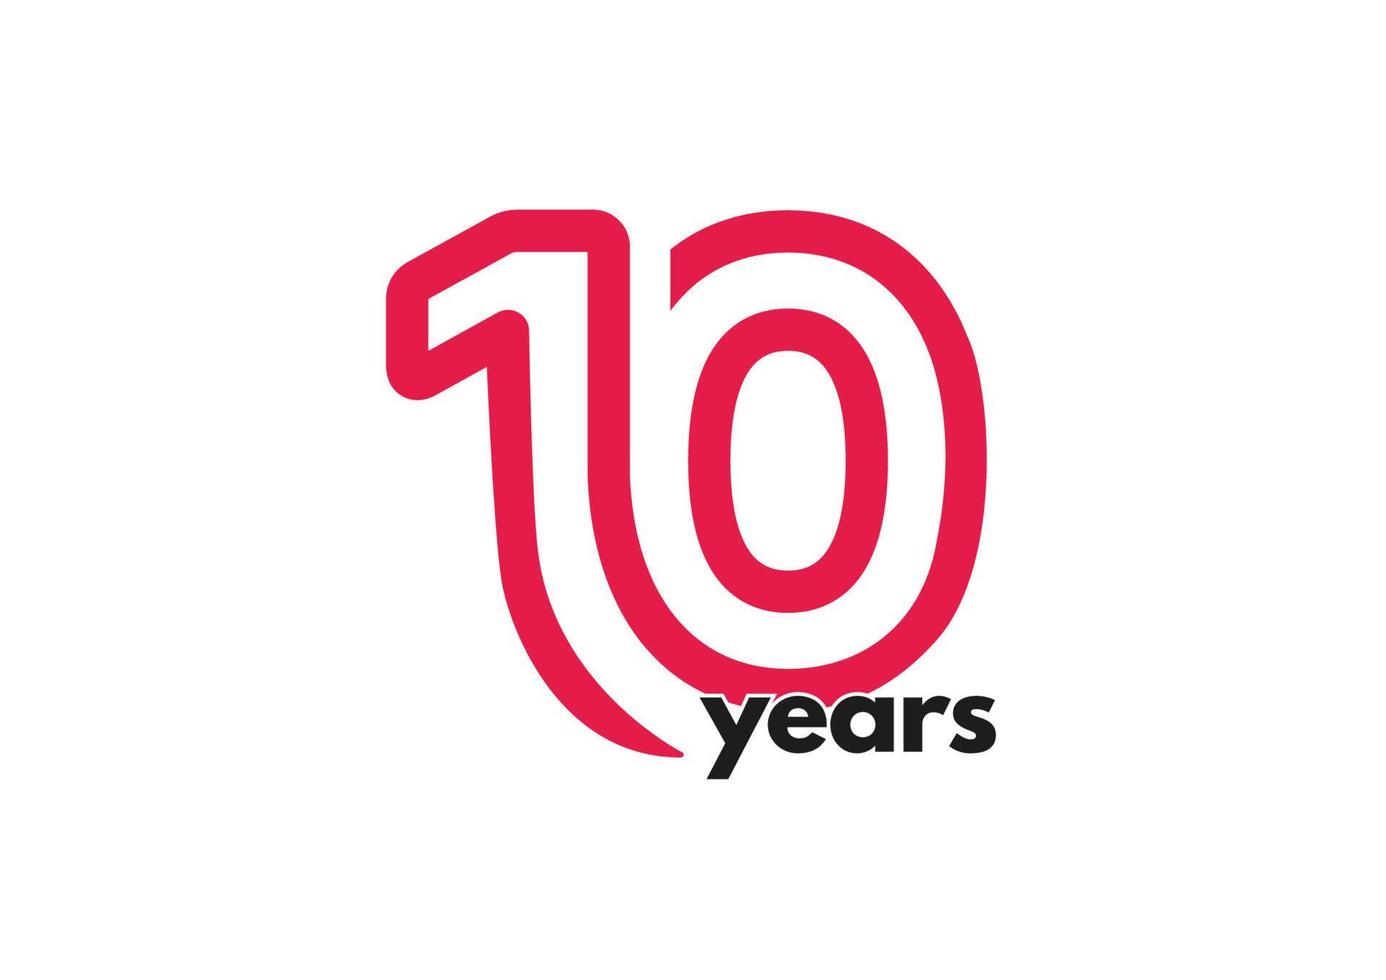 Logotipo y tipografía del décimo año. vector